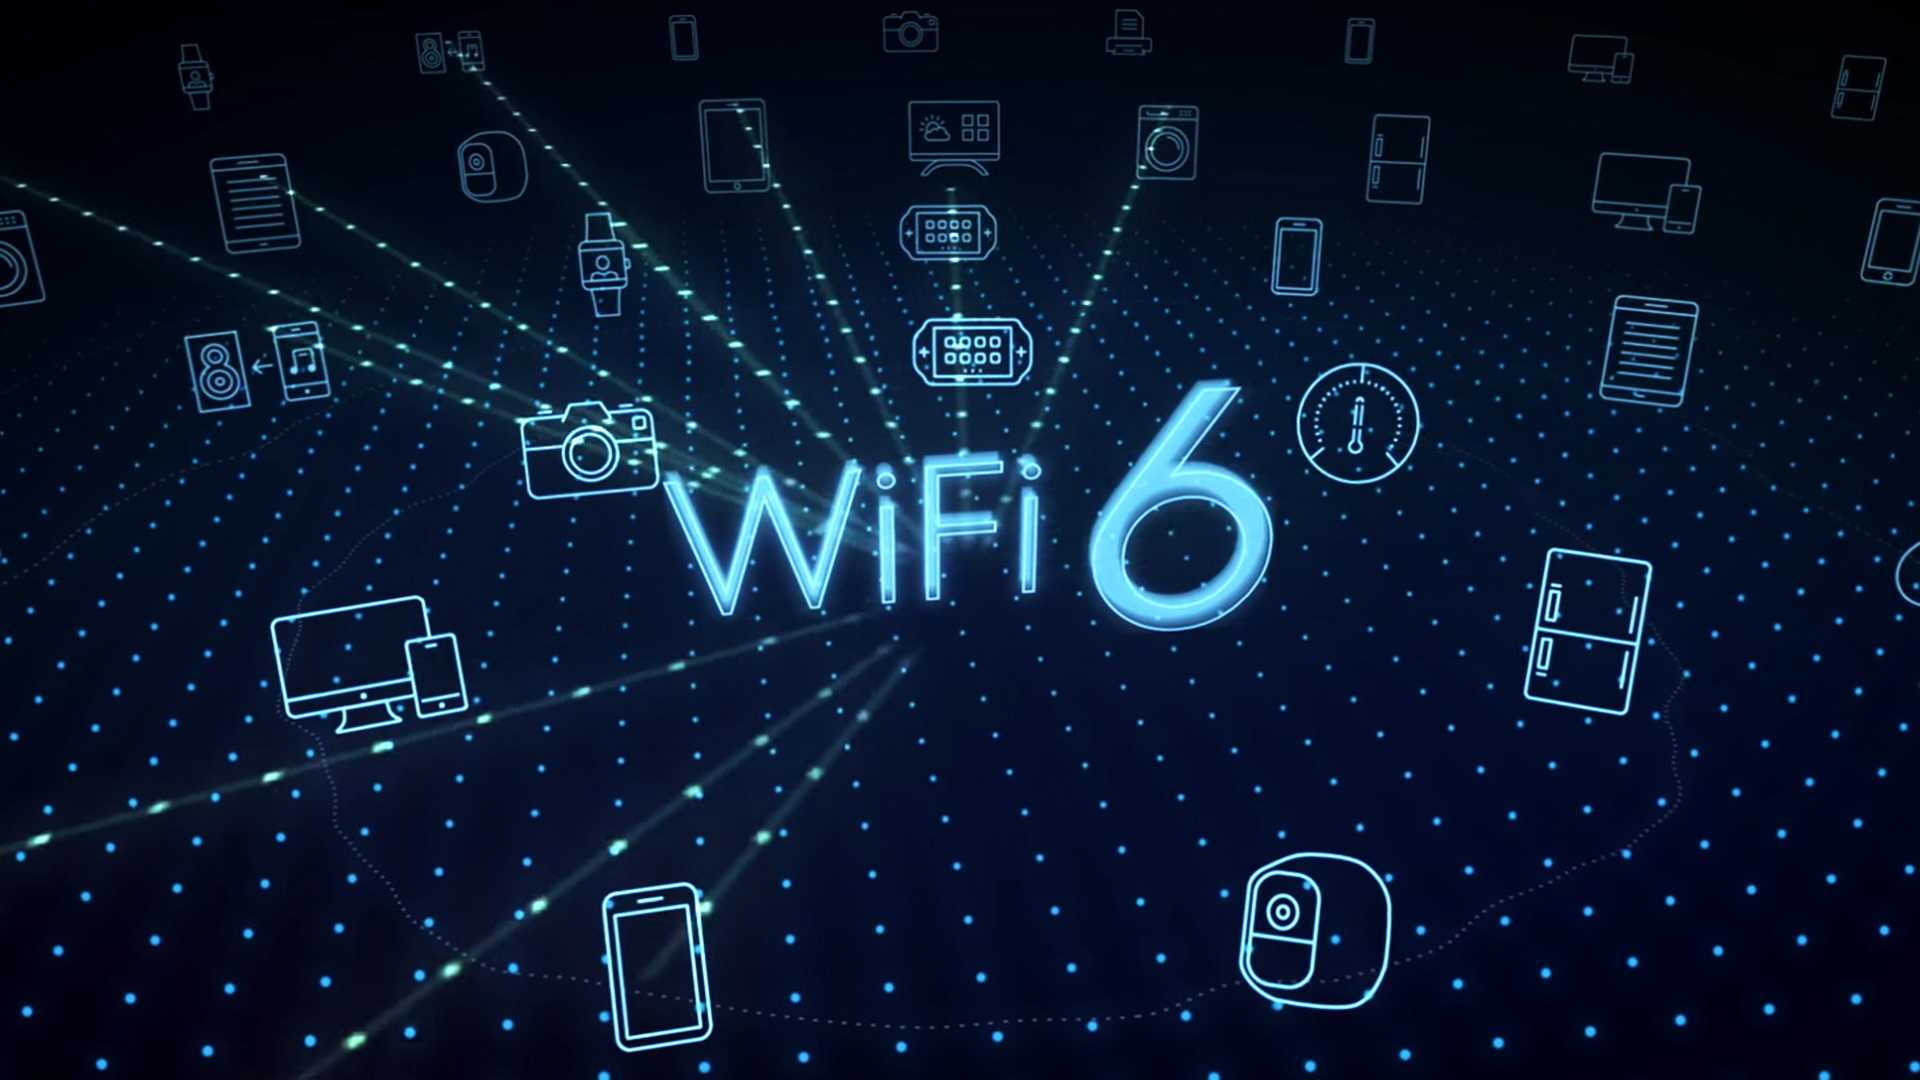 Ответы на вопросы о Wi-Fi 6 Поддерживаемы устройства и роутеры, настройка и подключение по 80211ax, как работает соединение, переход, совместимость